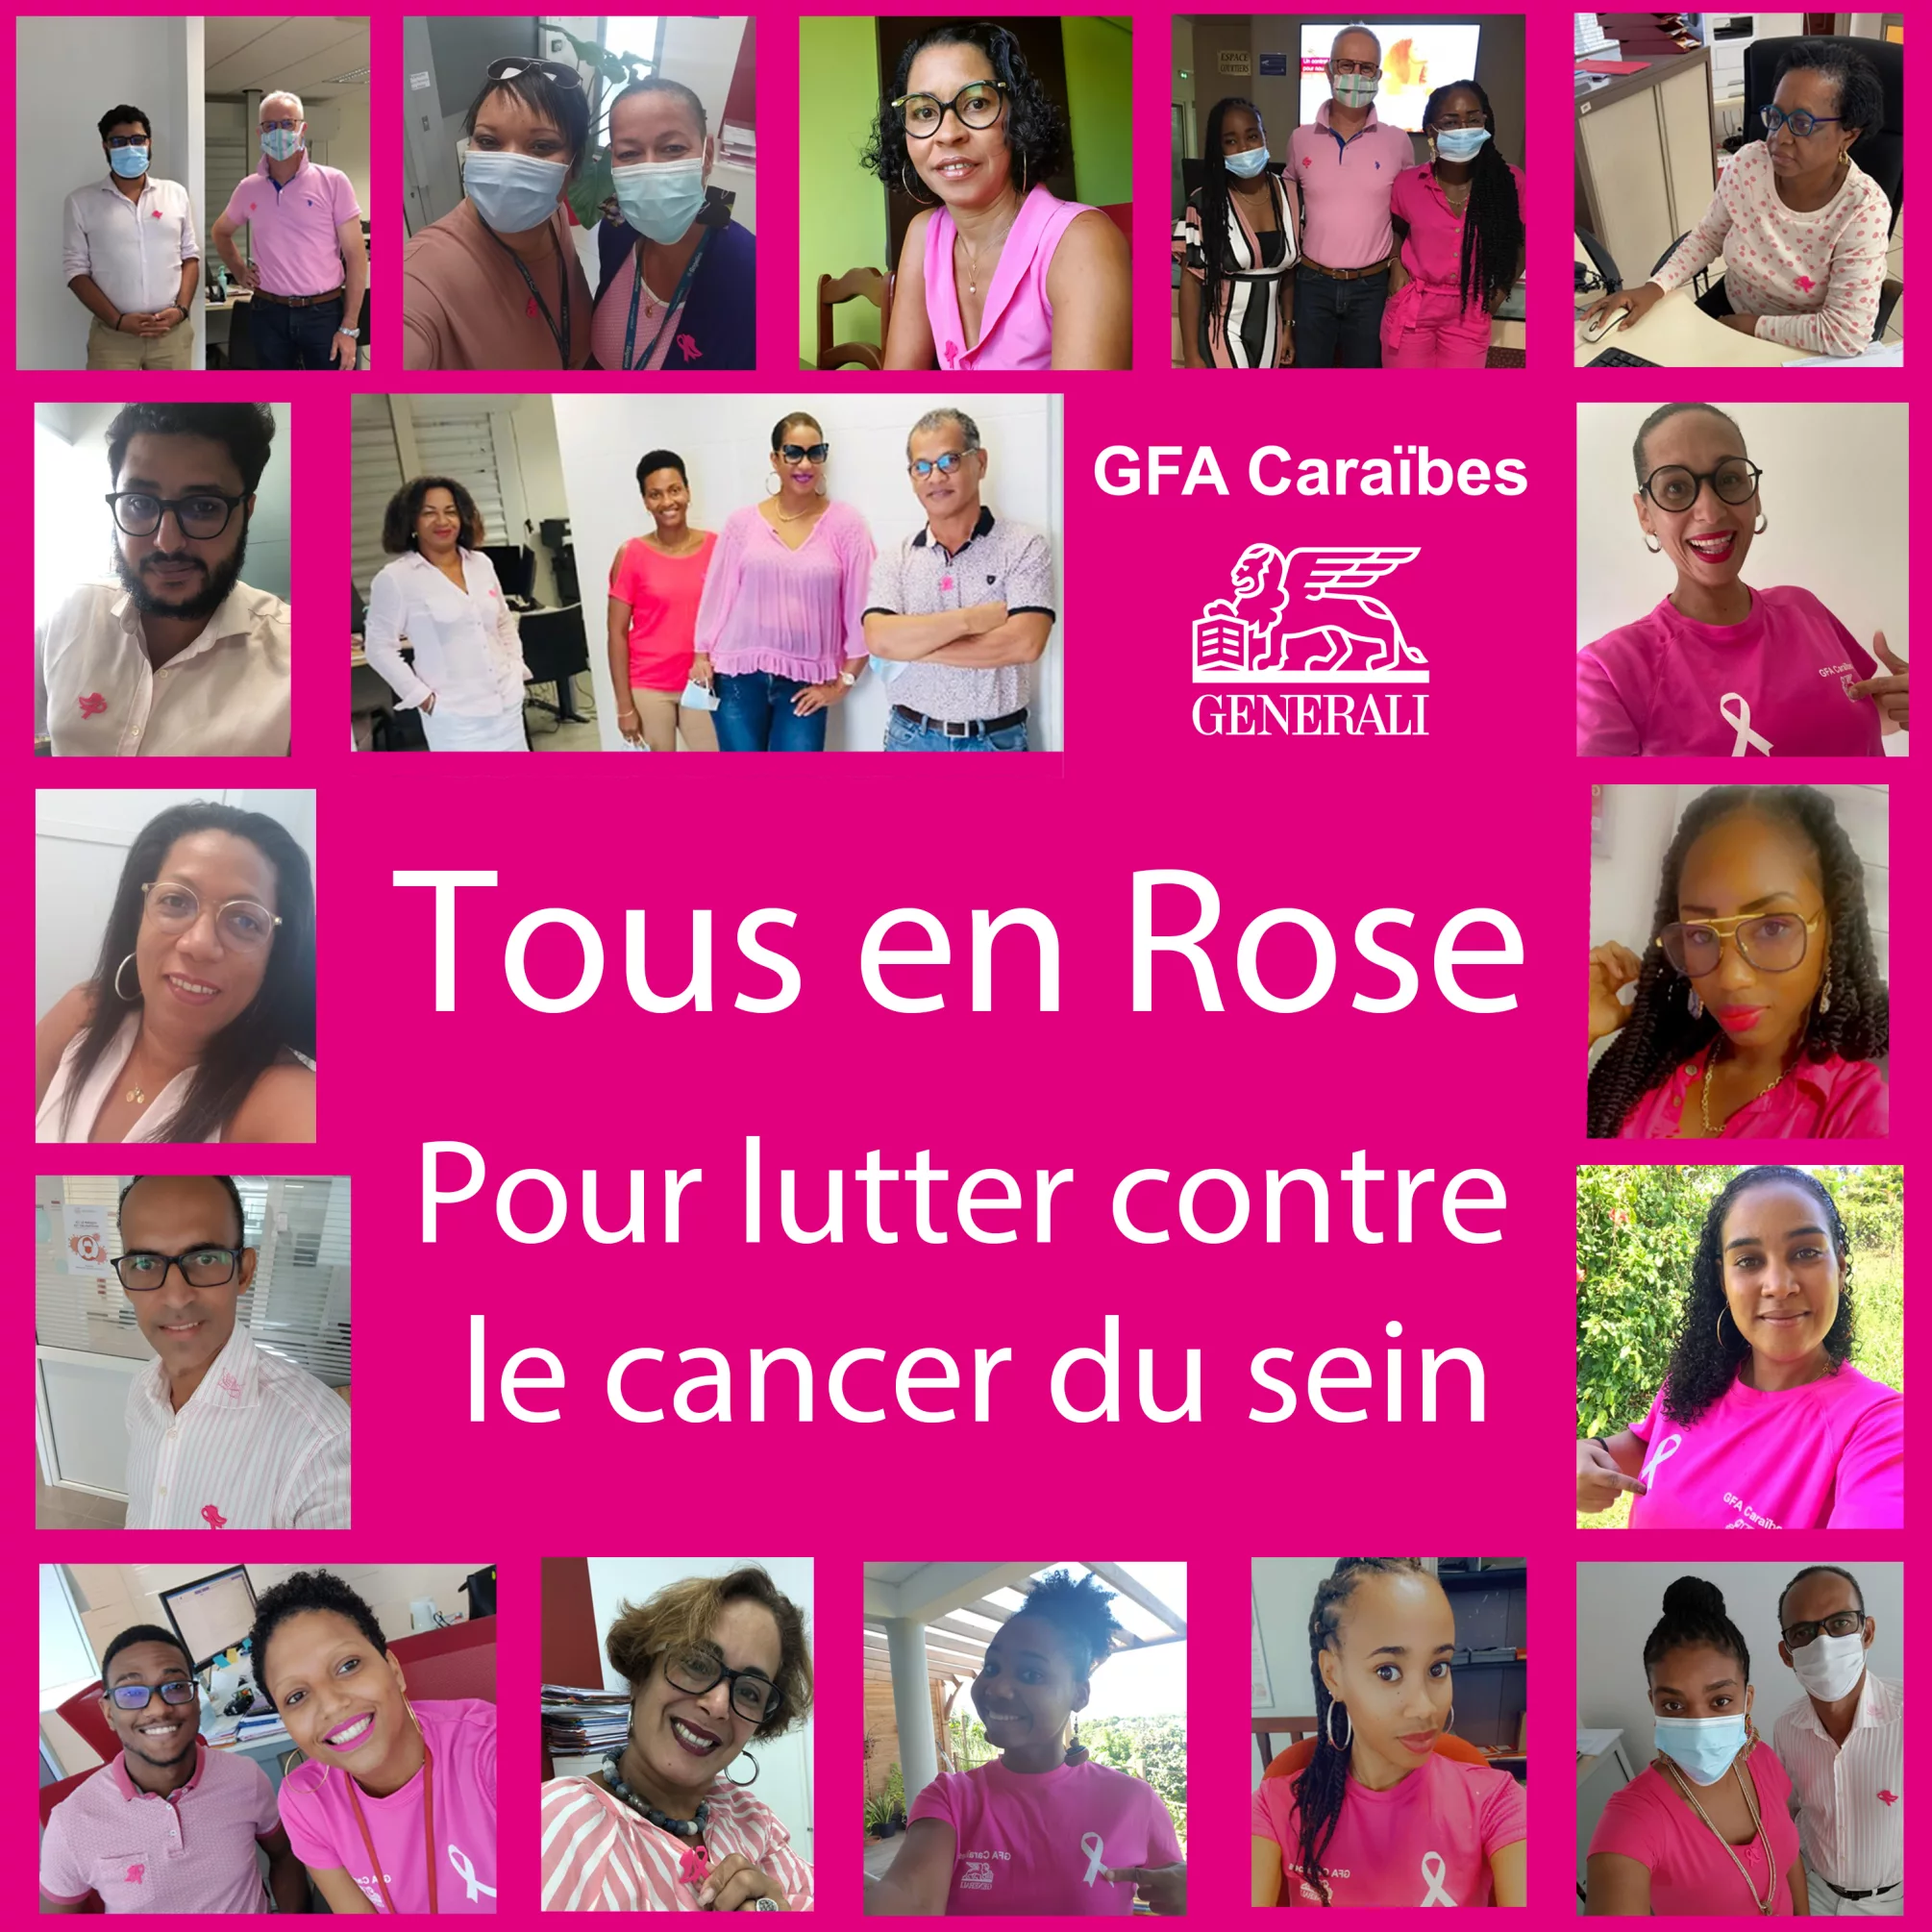 Tous en rose pour lutter contre le cancer du sein. GFA Caraïbes